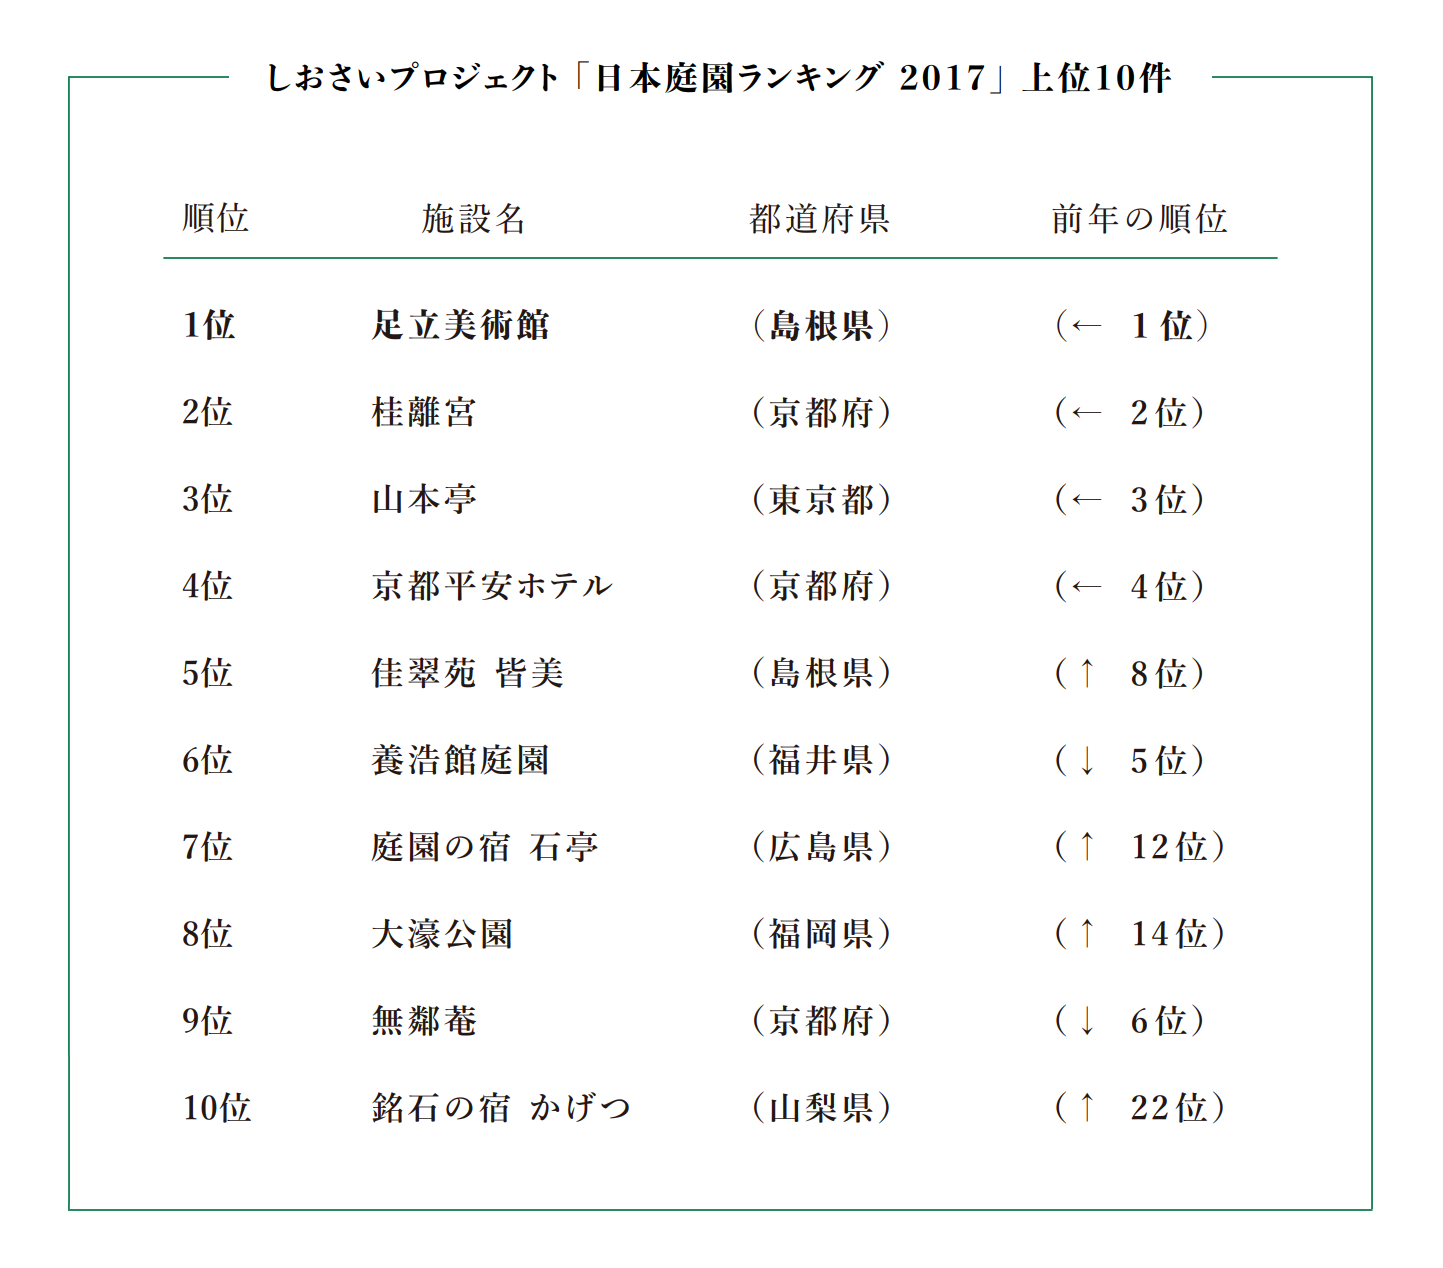 アメリカの有名日本庭園専門誌 最新ランキングを発表 足立美術館が15年連続日本一 やまとごころ Jp